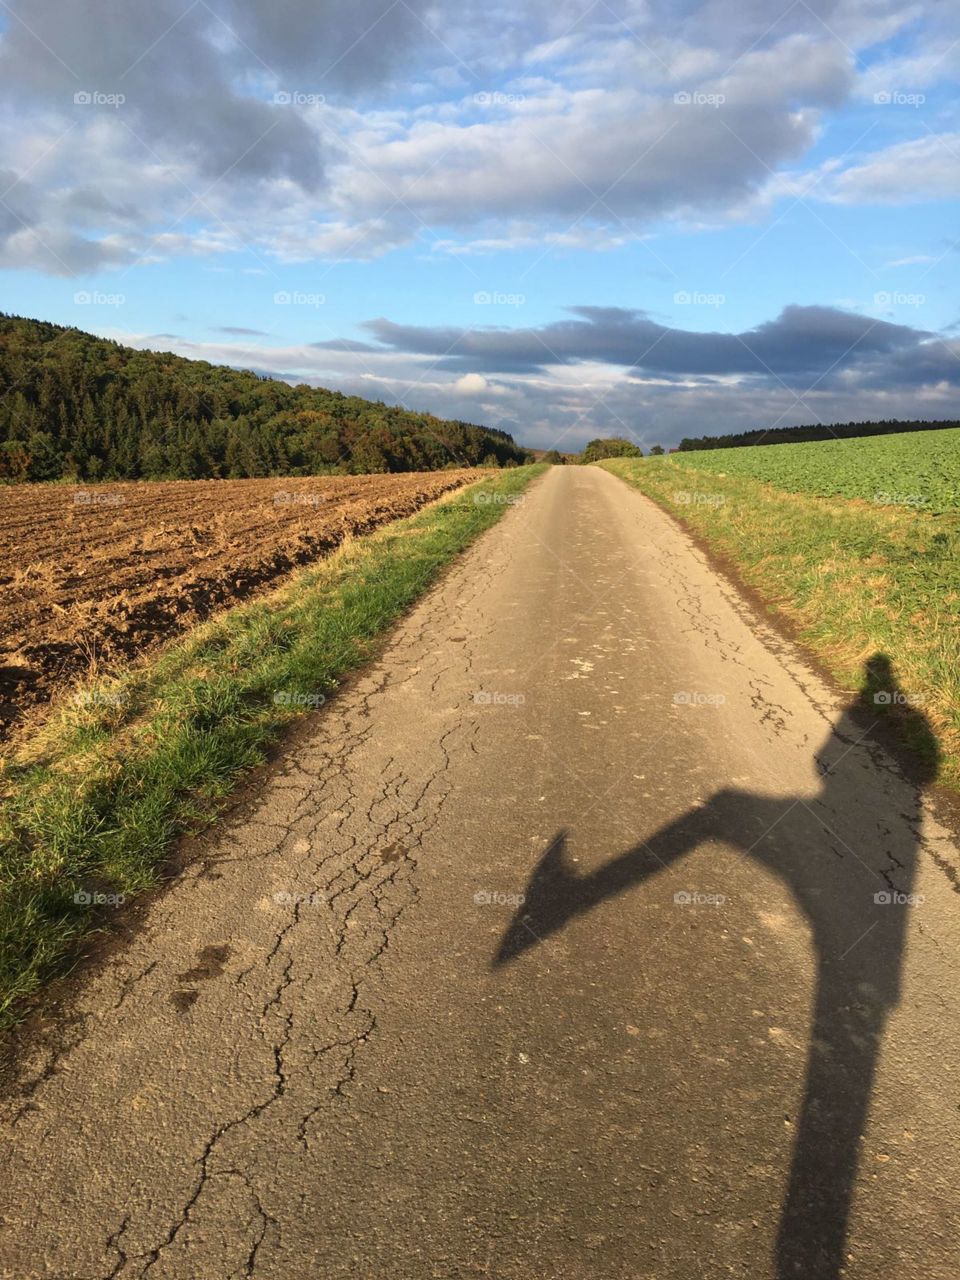 taking a walk in germany sauerland shadow sun